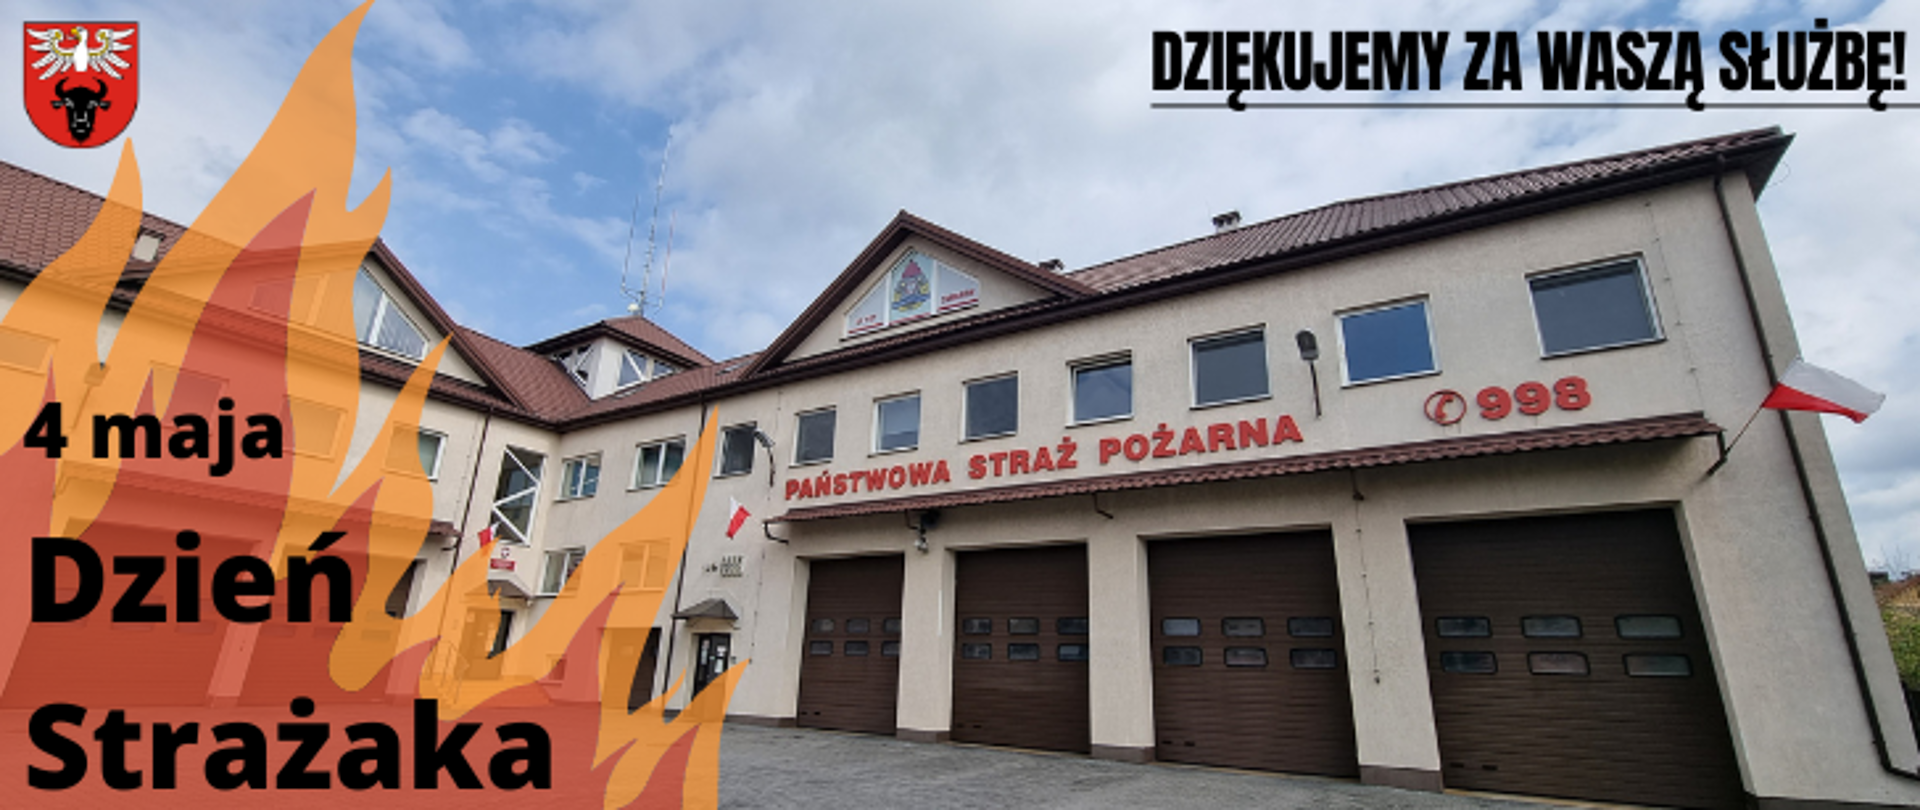 w lewym górnym rogu znajduje się logo powiatu zambrowskiego, niżej płomień ognia a na nim napis :4 maja Dzień Strażaka", w tle widać budynek straży w Zambrowie, a w prawym górnym rogu napis z podkreśleniem "Dziękujemy za waszą służbę!"